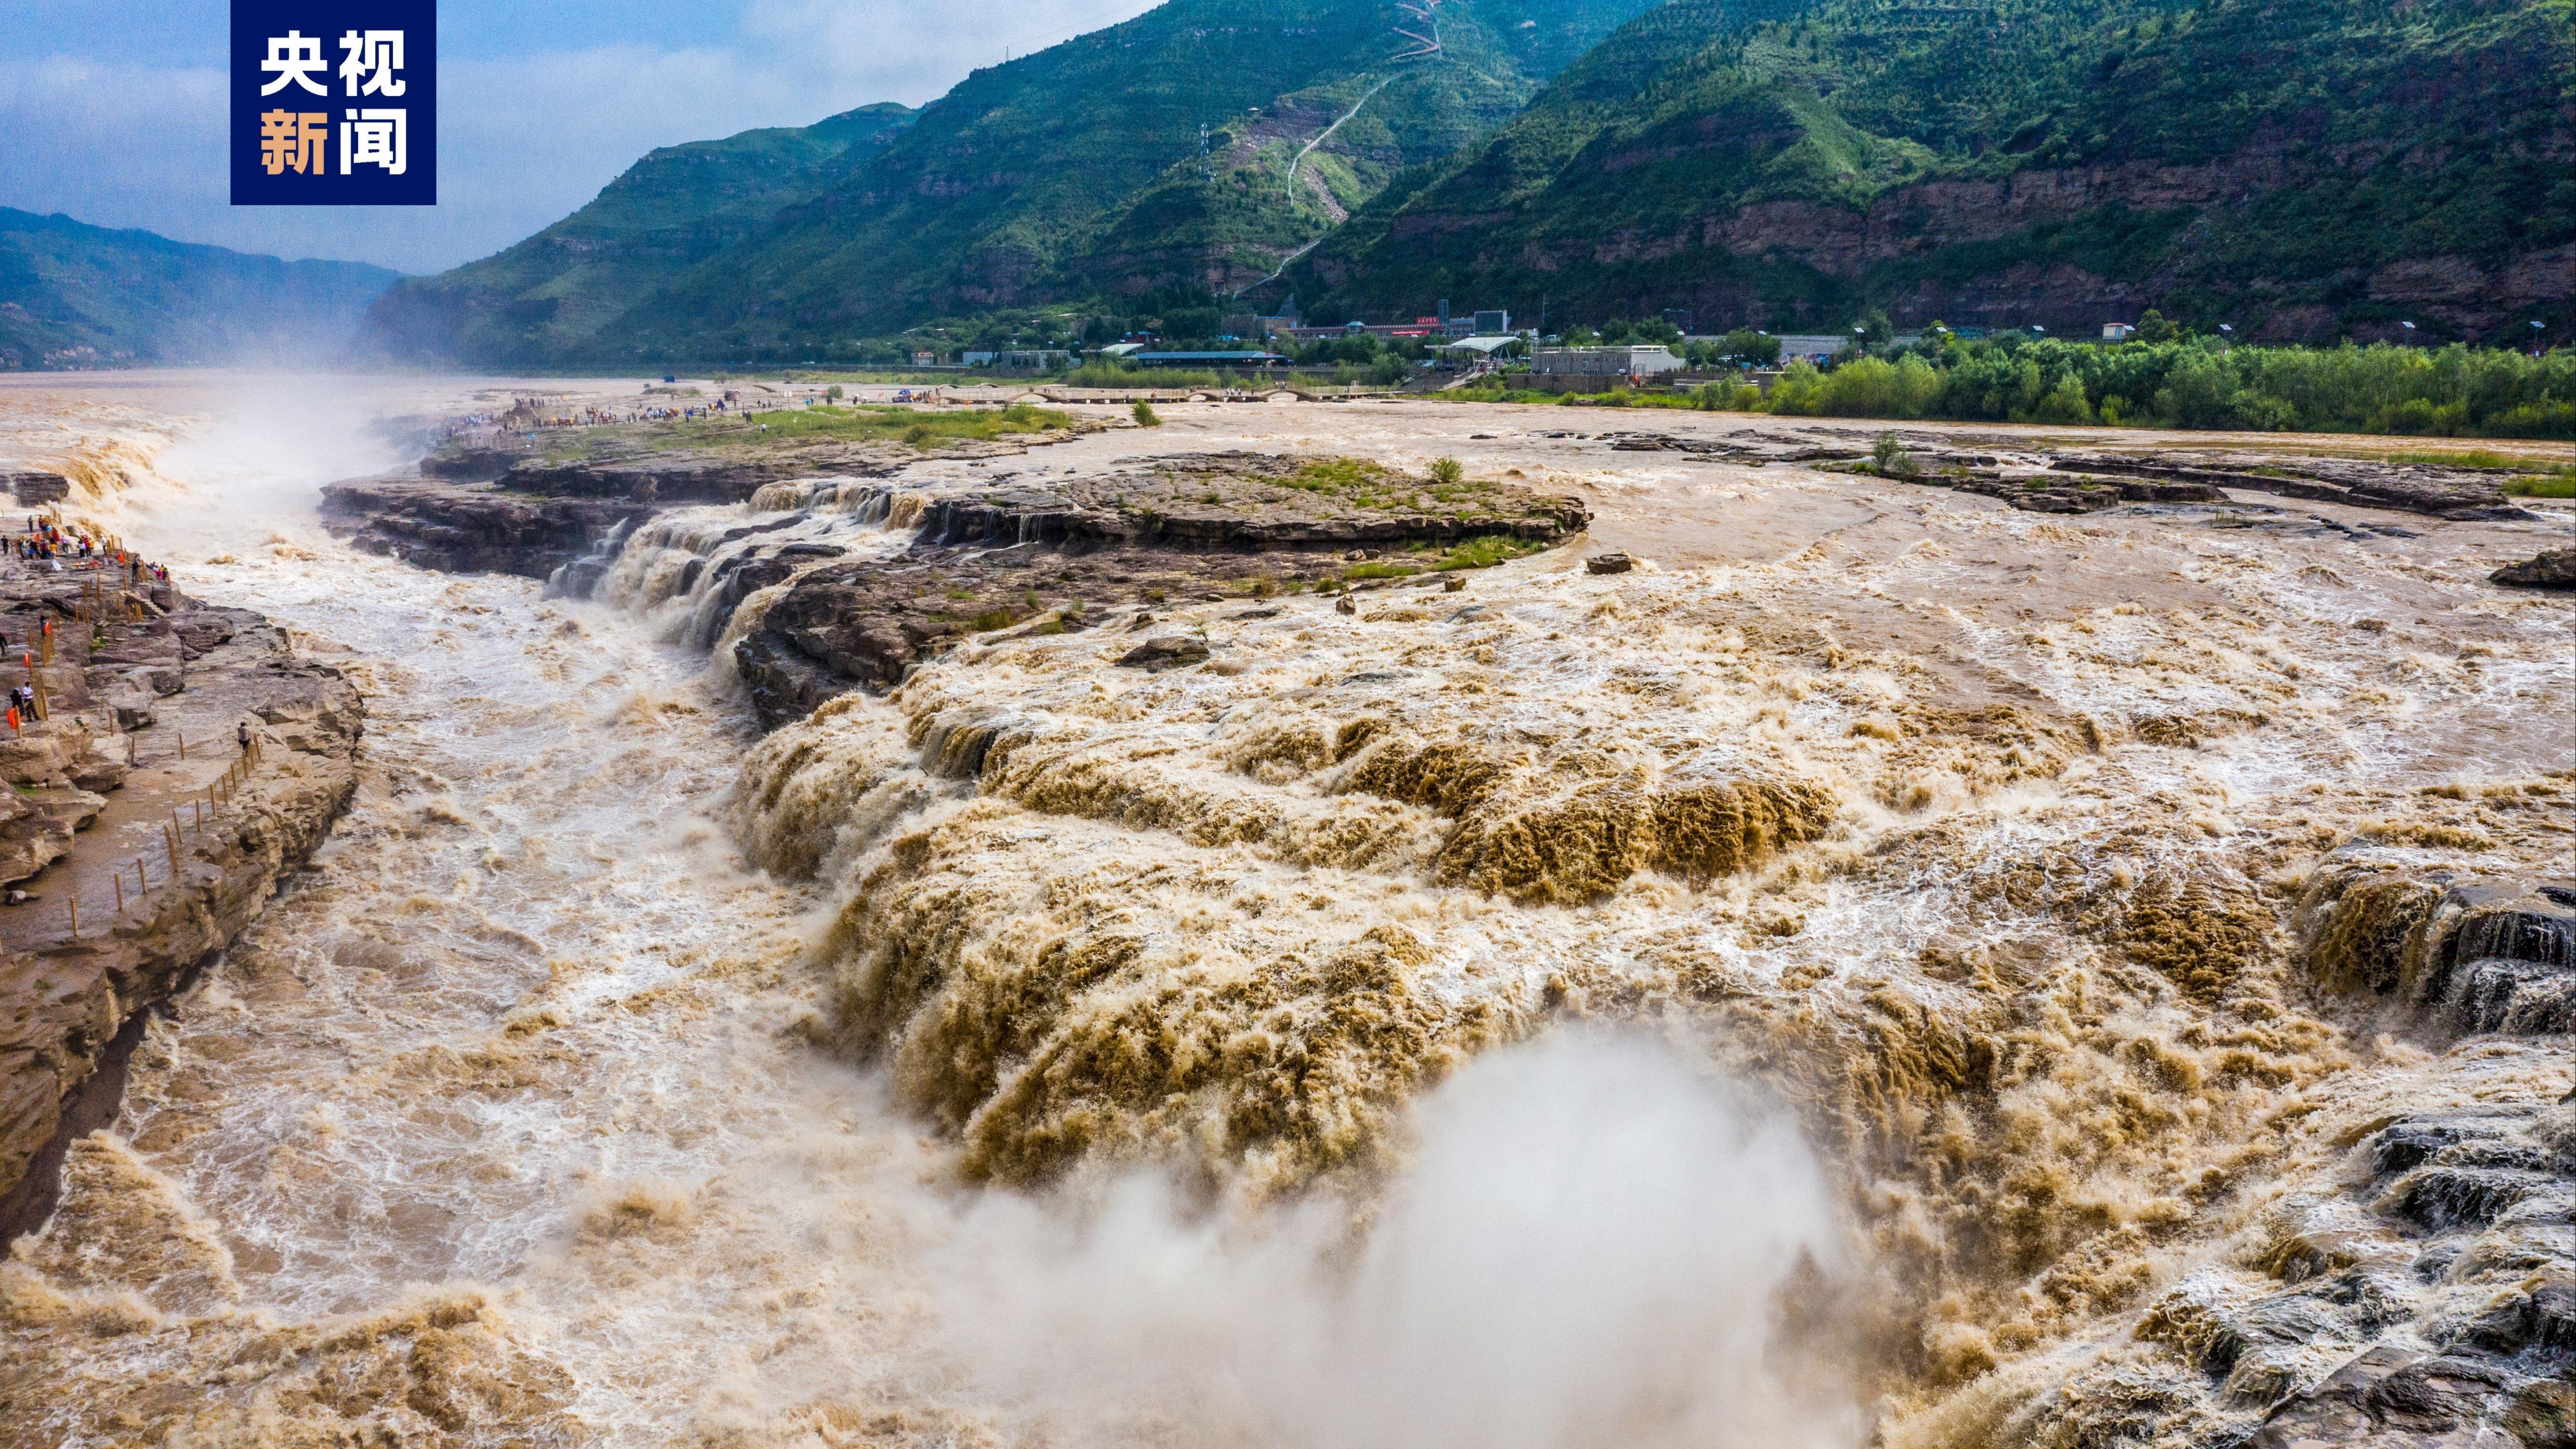 وزارت فرهنگ و گردشگری چین: آبشار «هو کوئو» رودخانه زرد به ناحیه ملی گردشگری درجه 5 تبدیل شدا